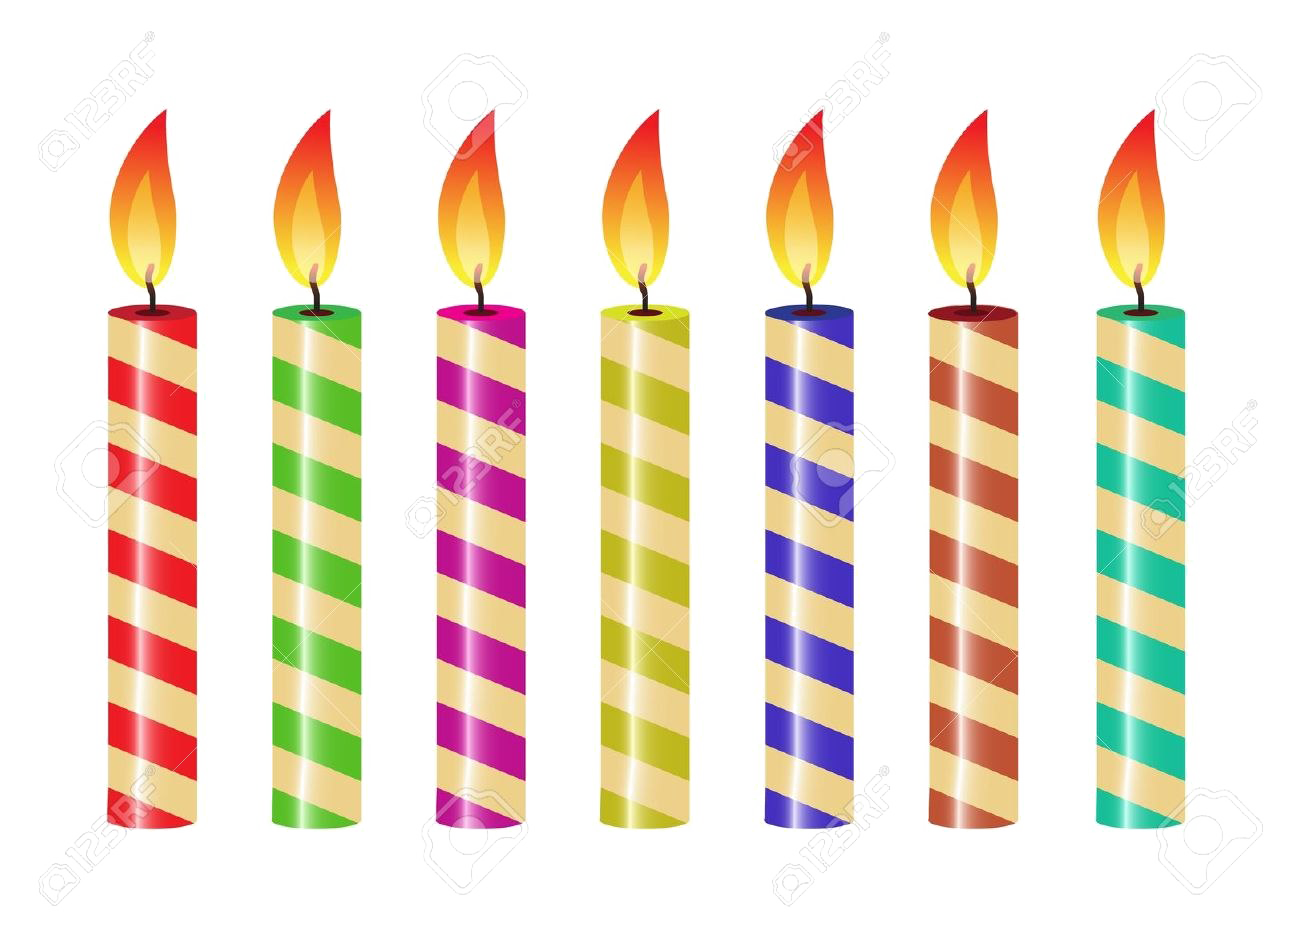 День рождения свечи PNG скачать бесплатно